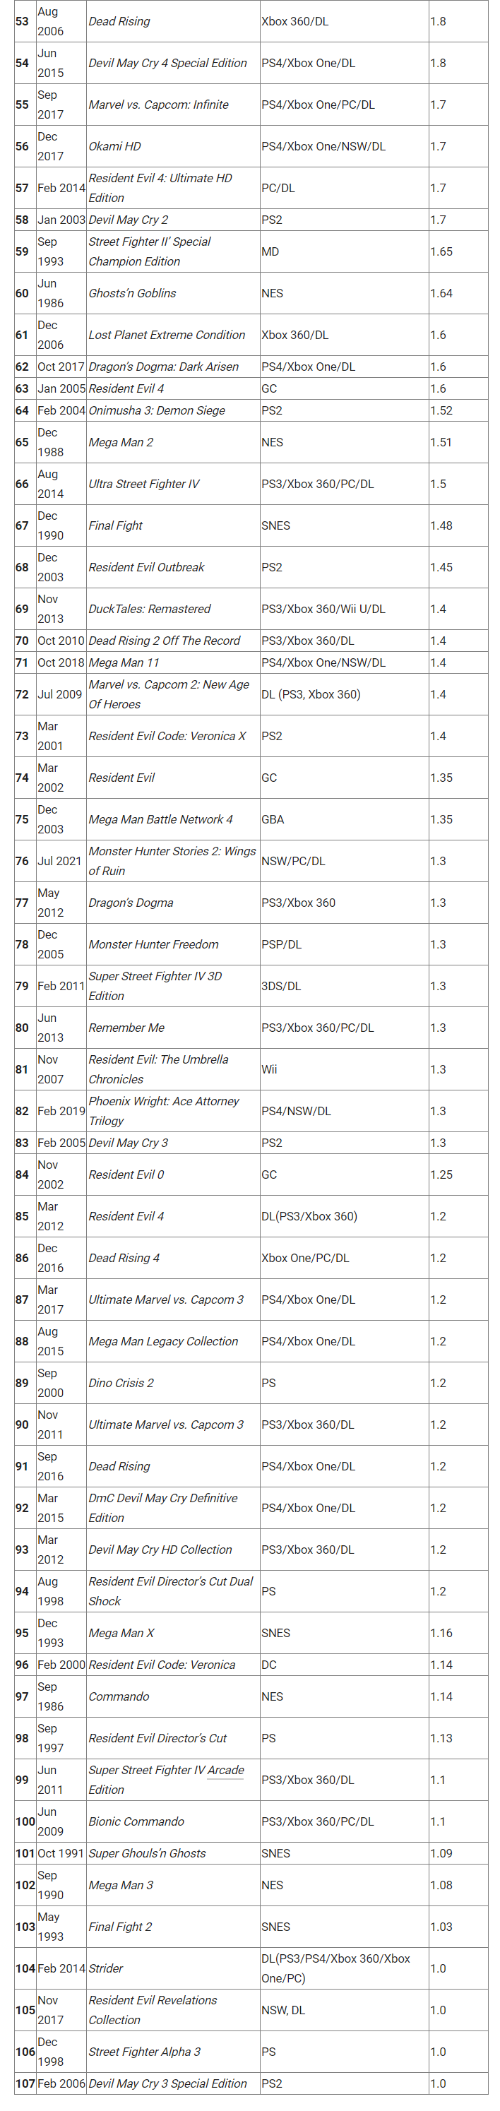 卡普空白金销量榜更新 《怪物猎人物语2》首次登榜